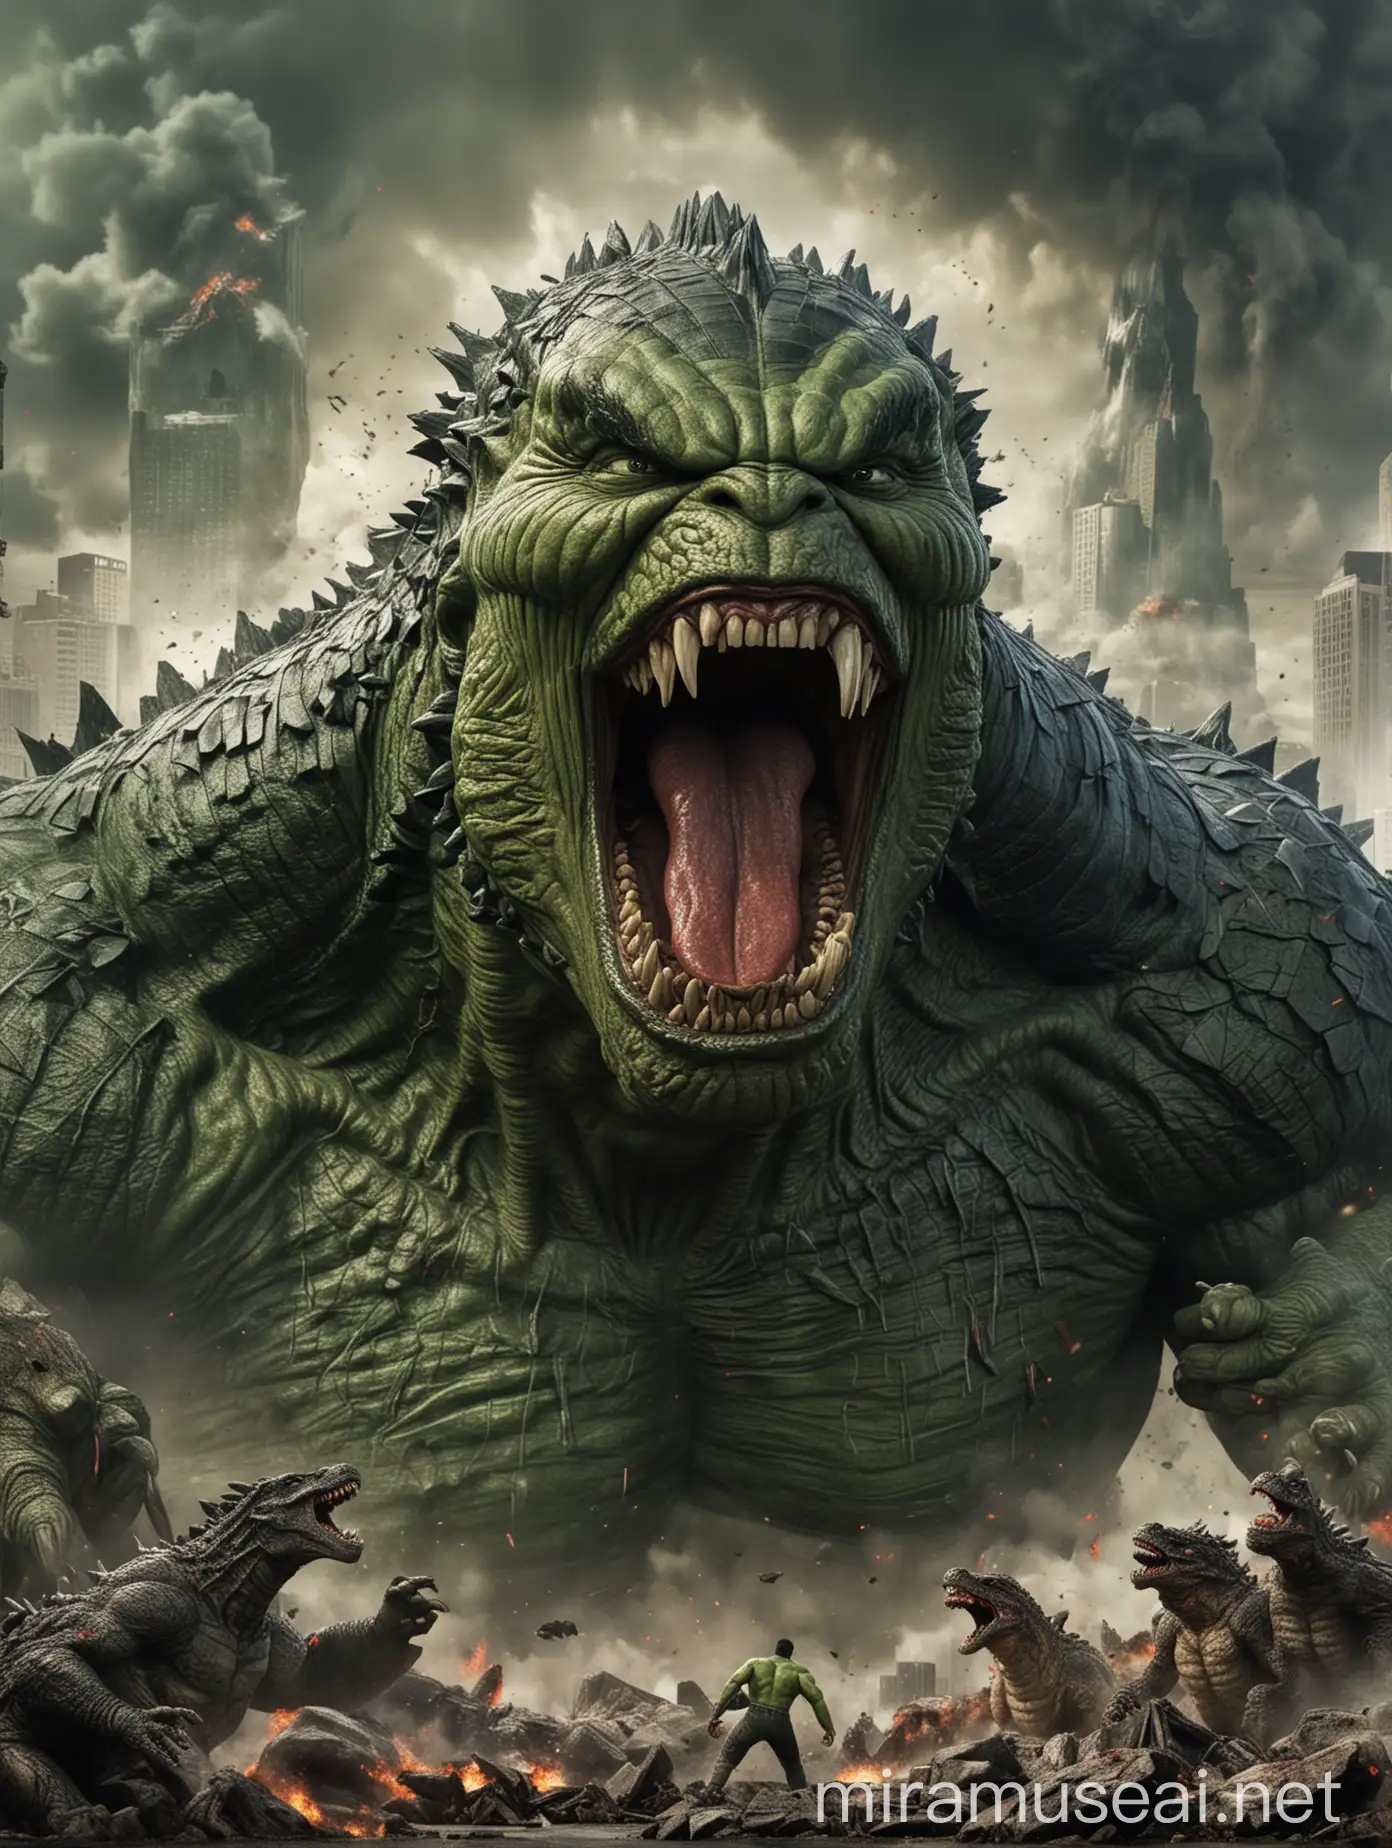 Hulk tearing the mouth of Godzilla, world war background, Hulk very angry, giant godzilla